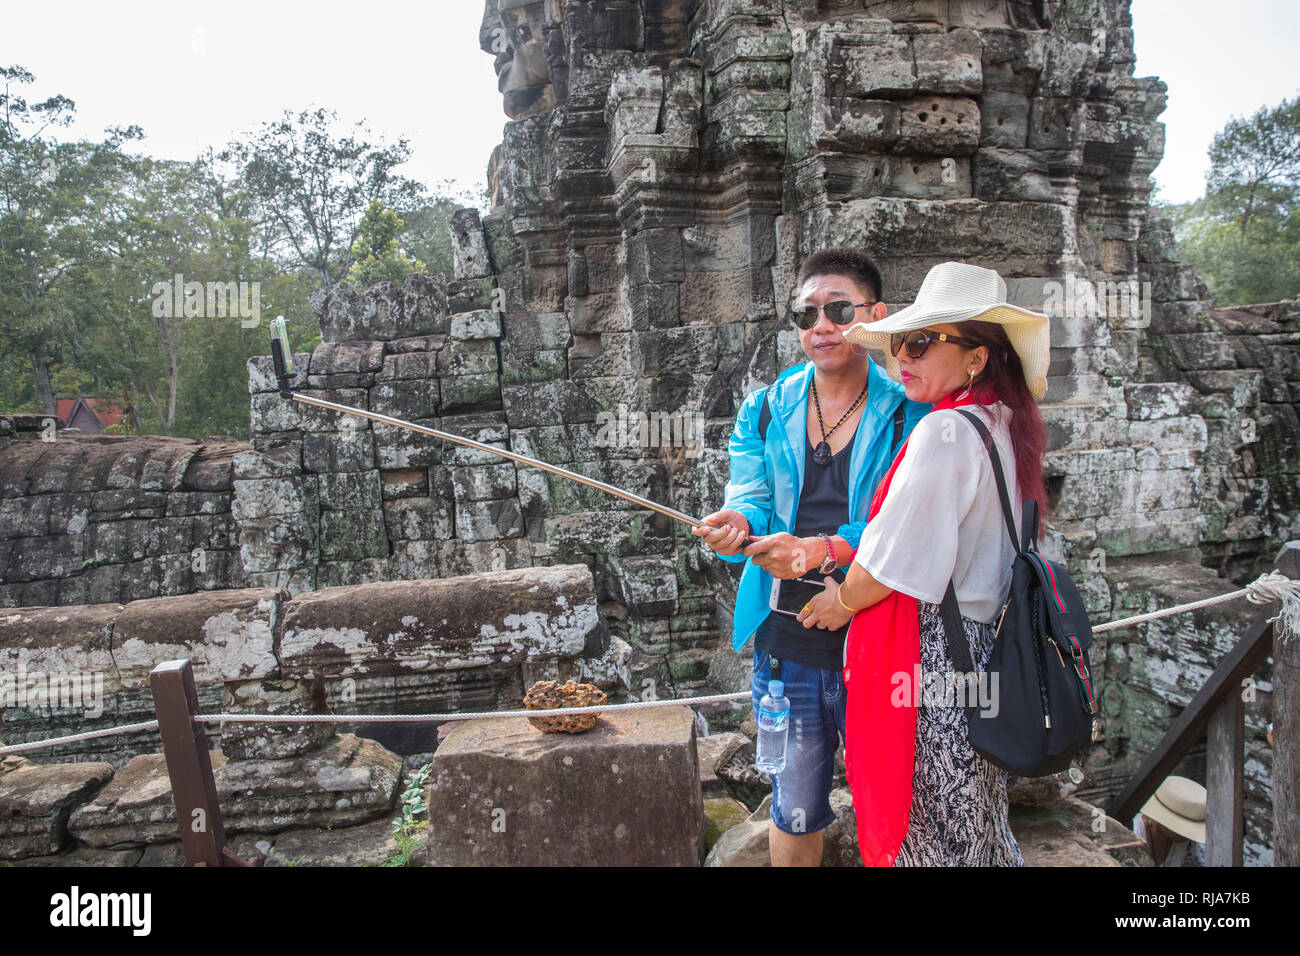 Siem Reap, Angkor, Tempel Bayon, von Touristen überlaufen, Paar beim fotografieren, Selfie Foto Stock